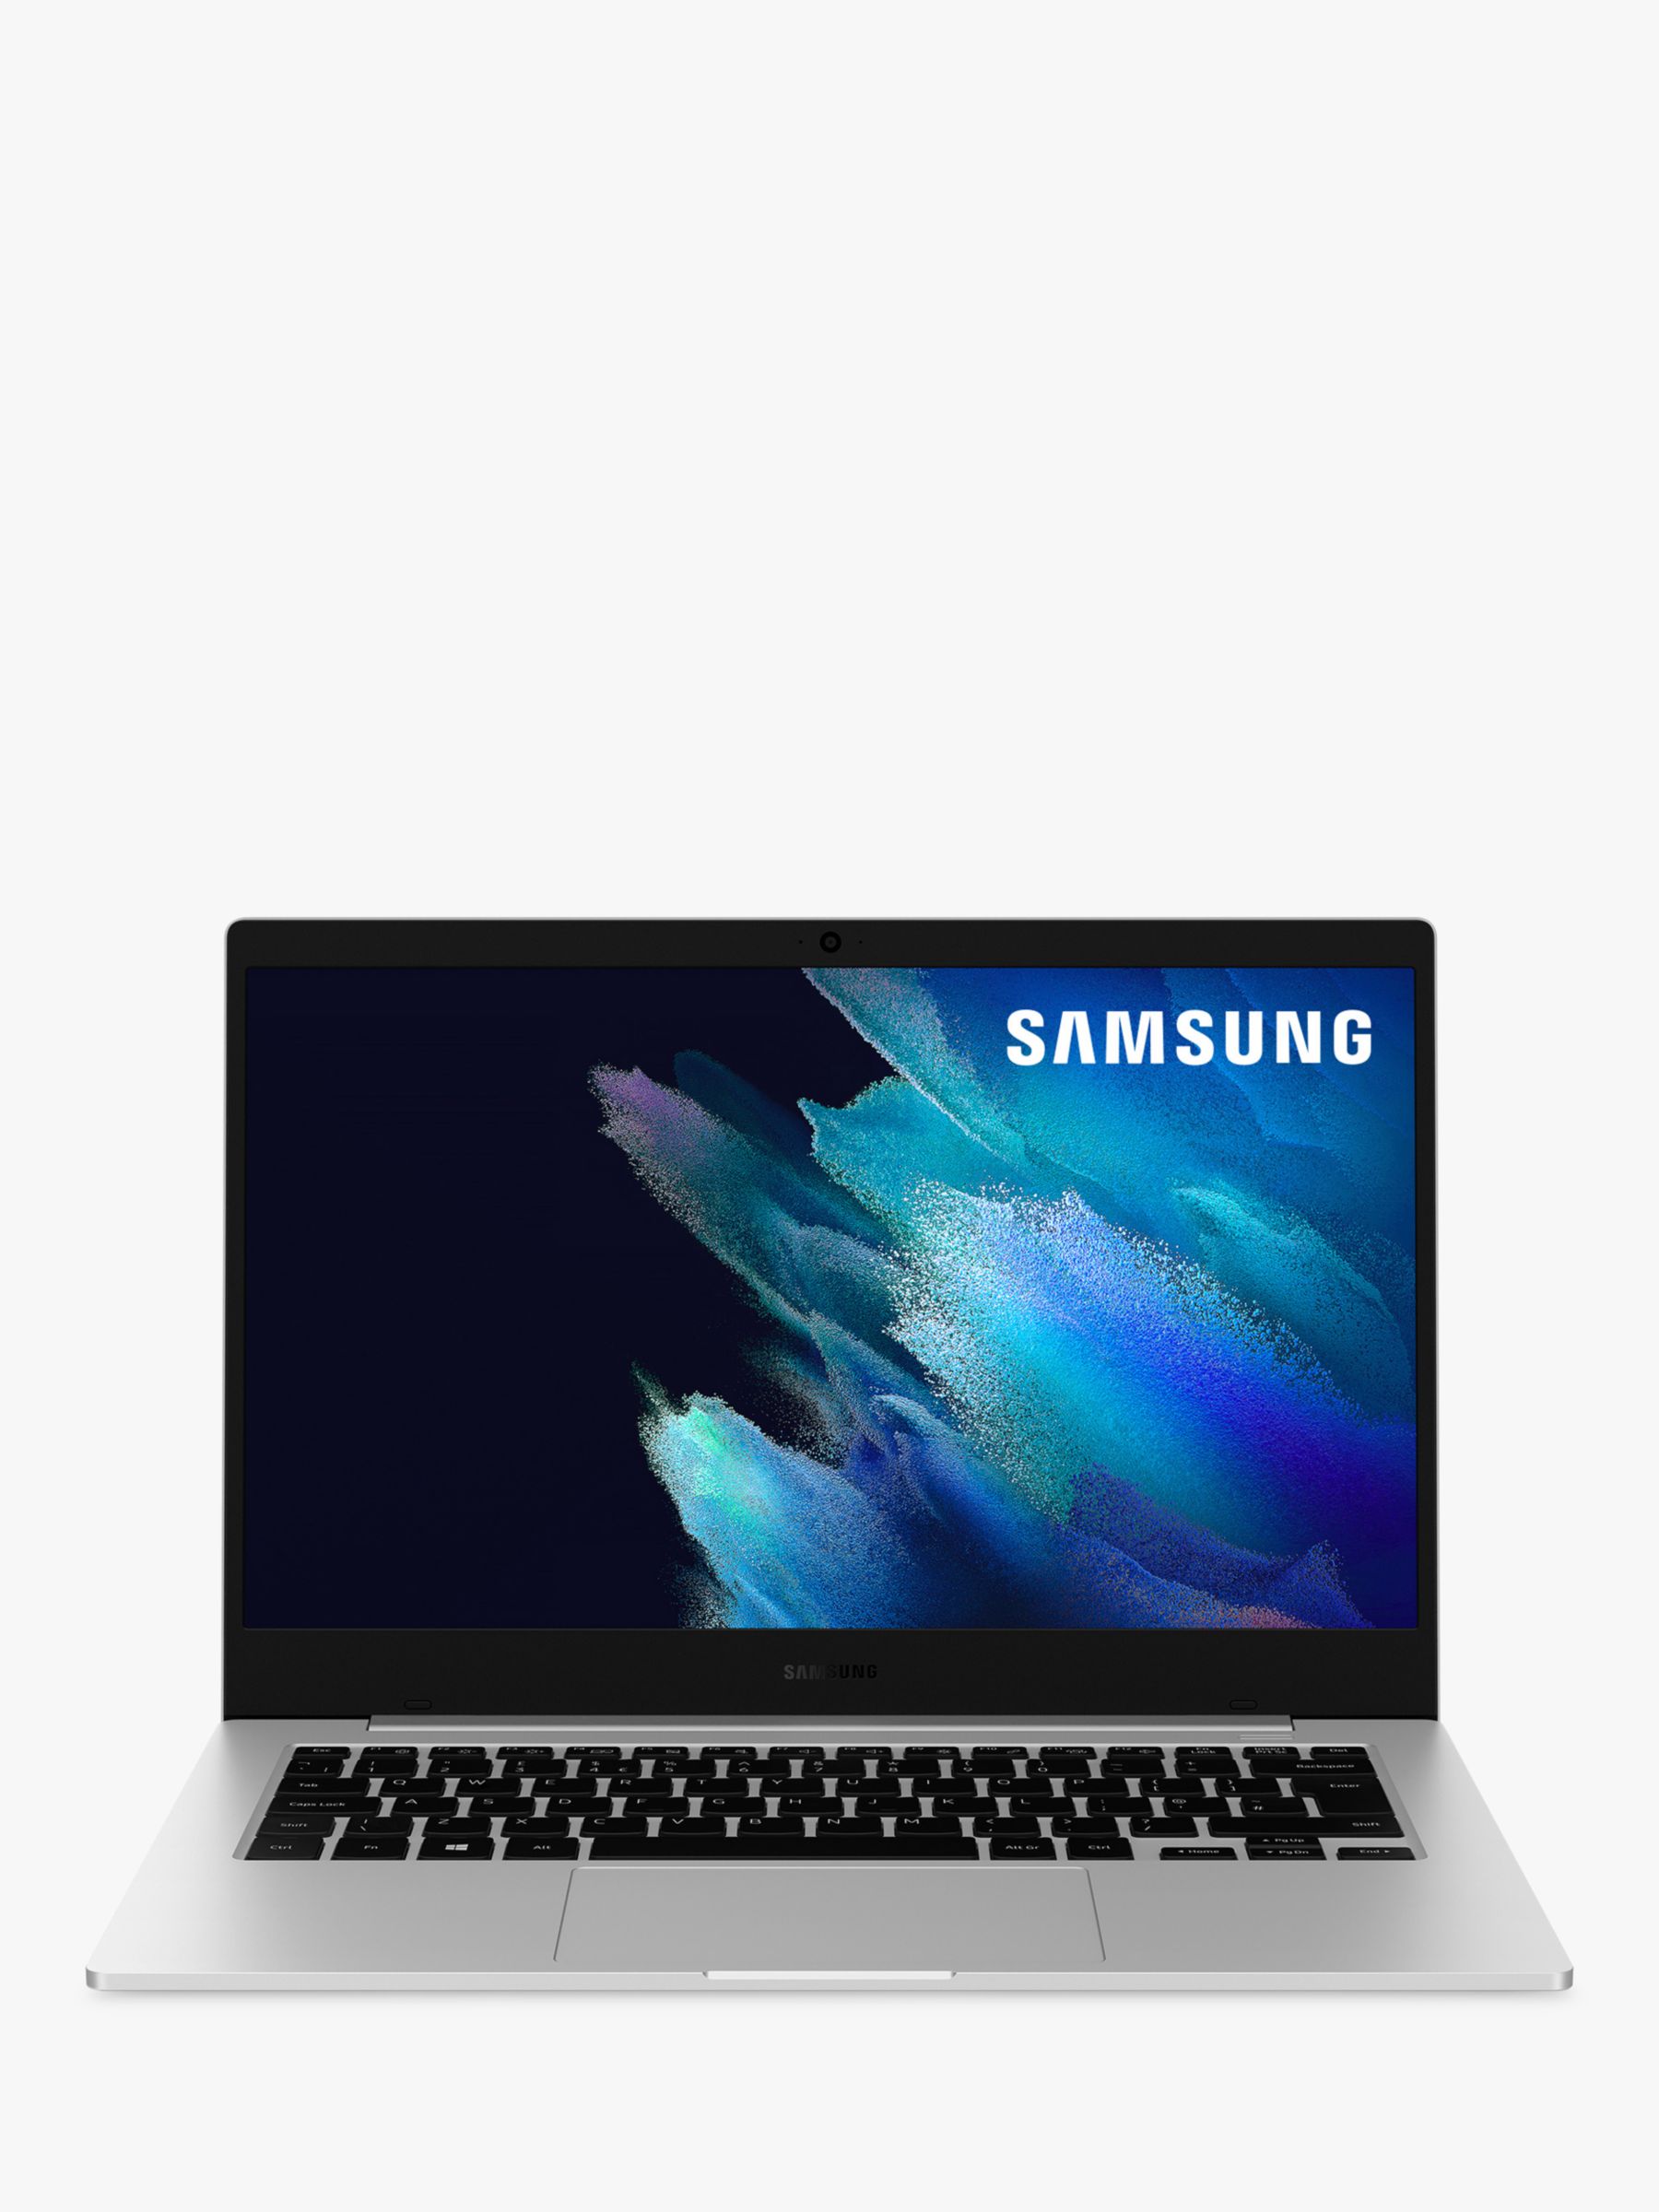 Samsung Galaxy Book Go 4G LTE Laptop, Qualcomm Snapdragon Processor, 8GB RAM, 128GB SSD, Wi-Fi + Cellular, 14" Full HD, Silver